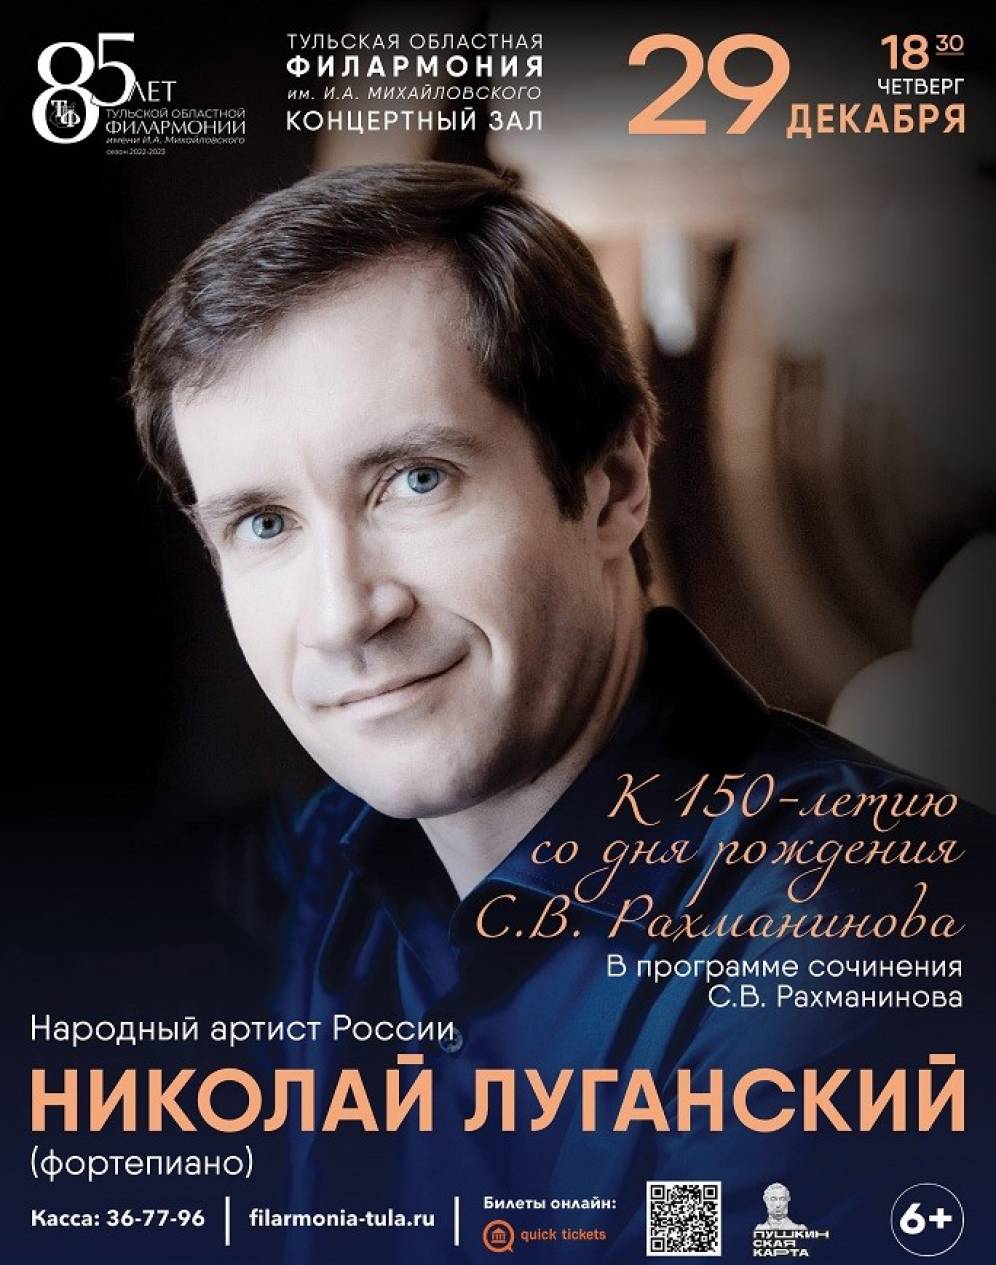 29 декабря туляков приглашают на концерт к 150-летию Сергея Рахманинова